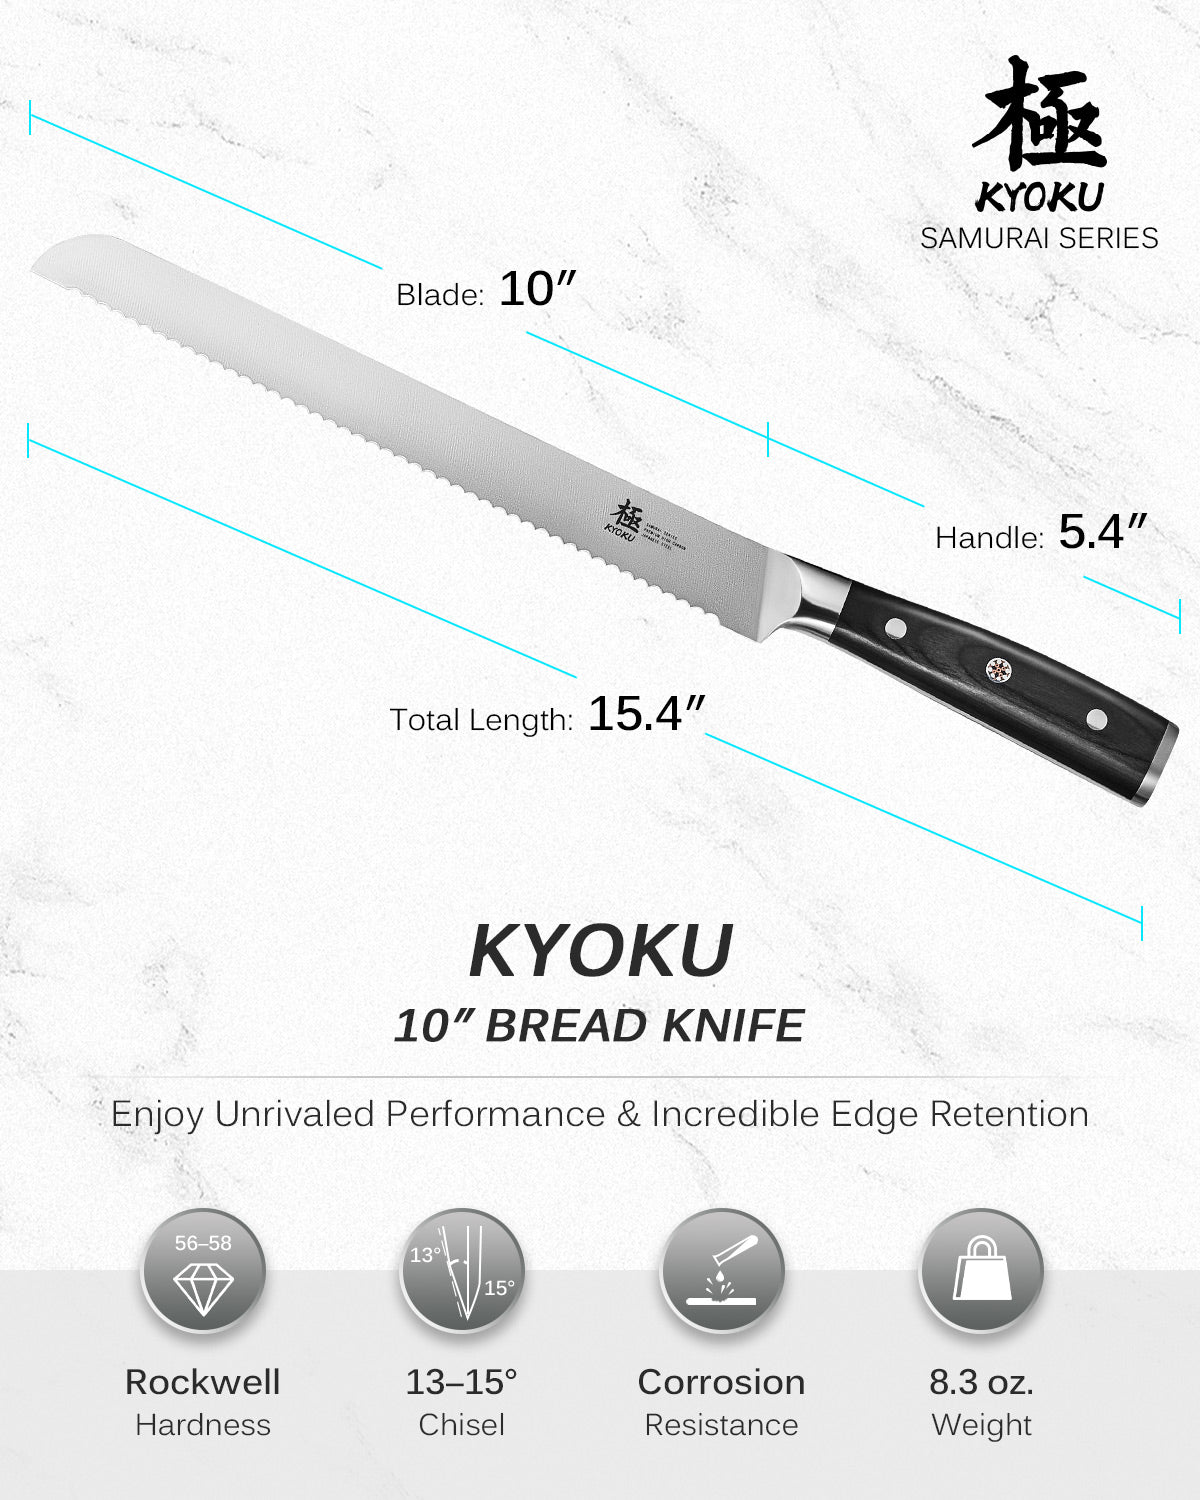 https://kyokuknives.com/cdn/shop/files/10--Serrated-Bread-Knife---Samurai-Series-Kyoku-Knives-1697014108883.jpg?v=1697616027